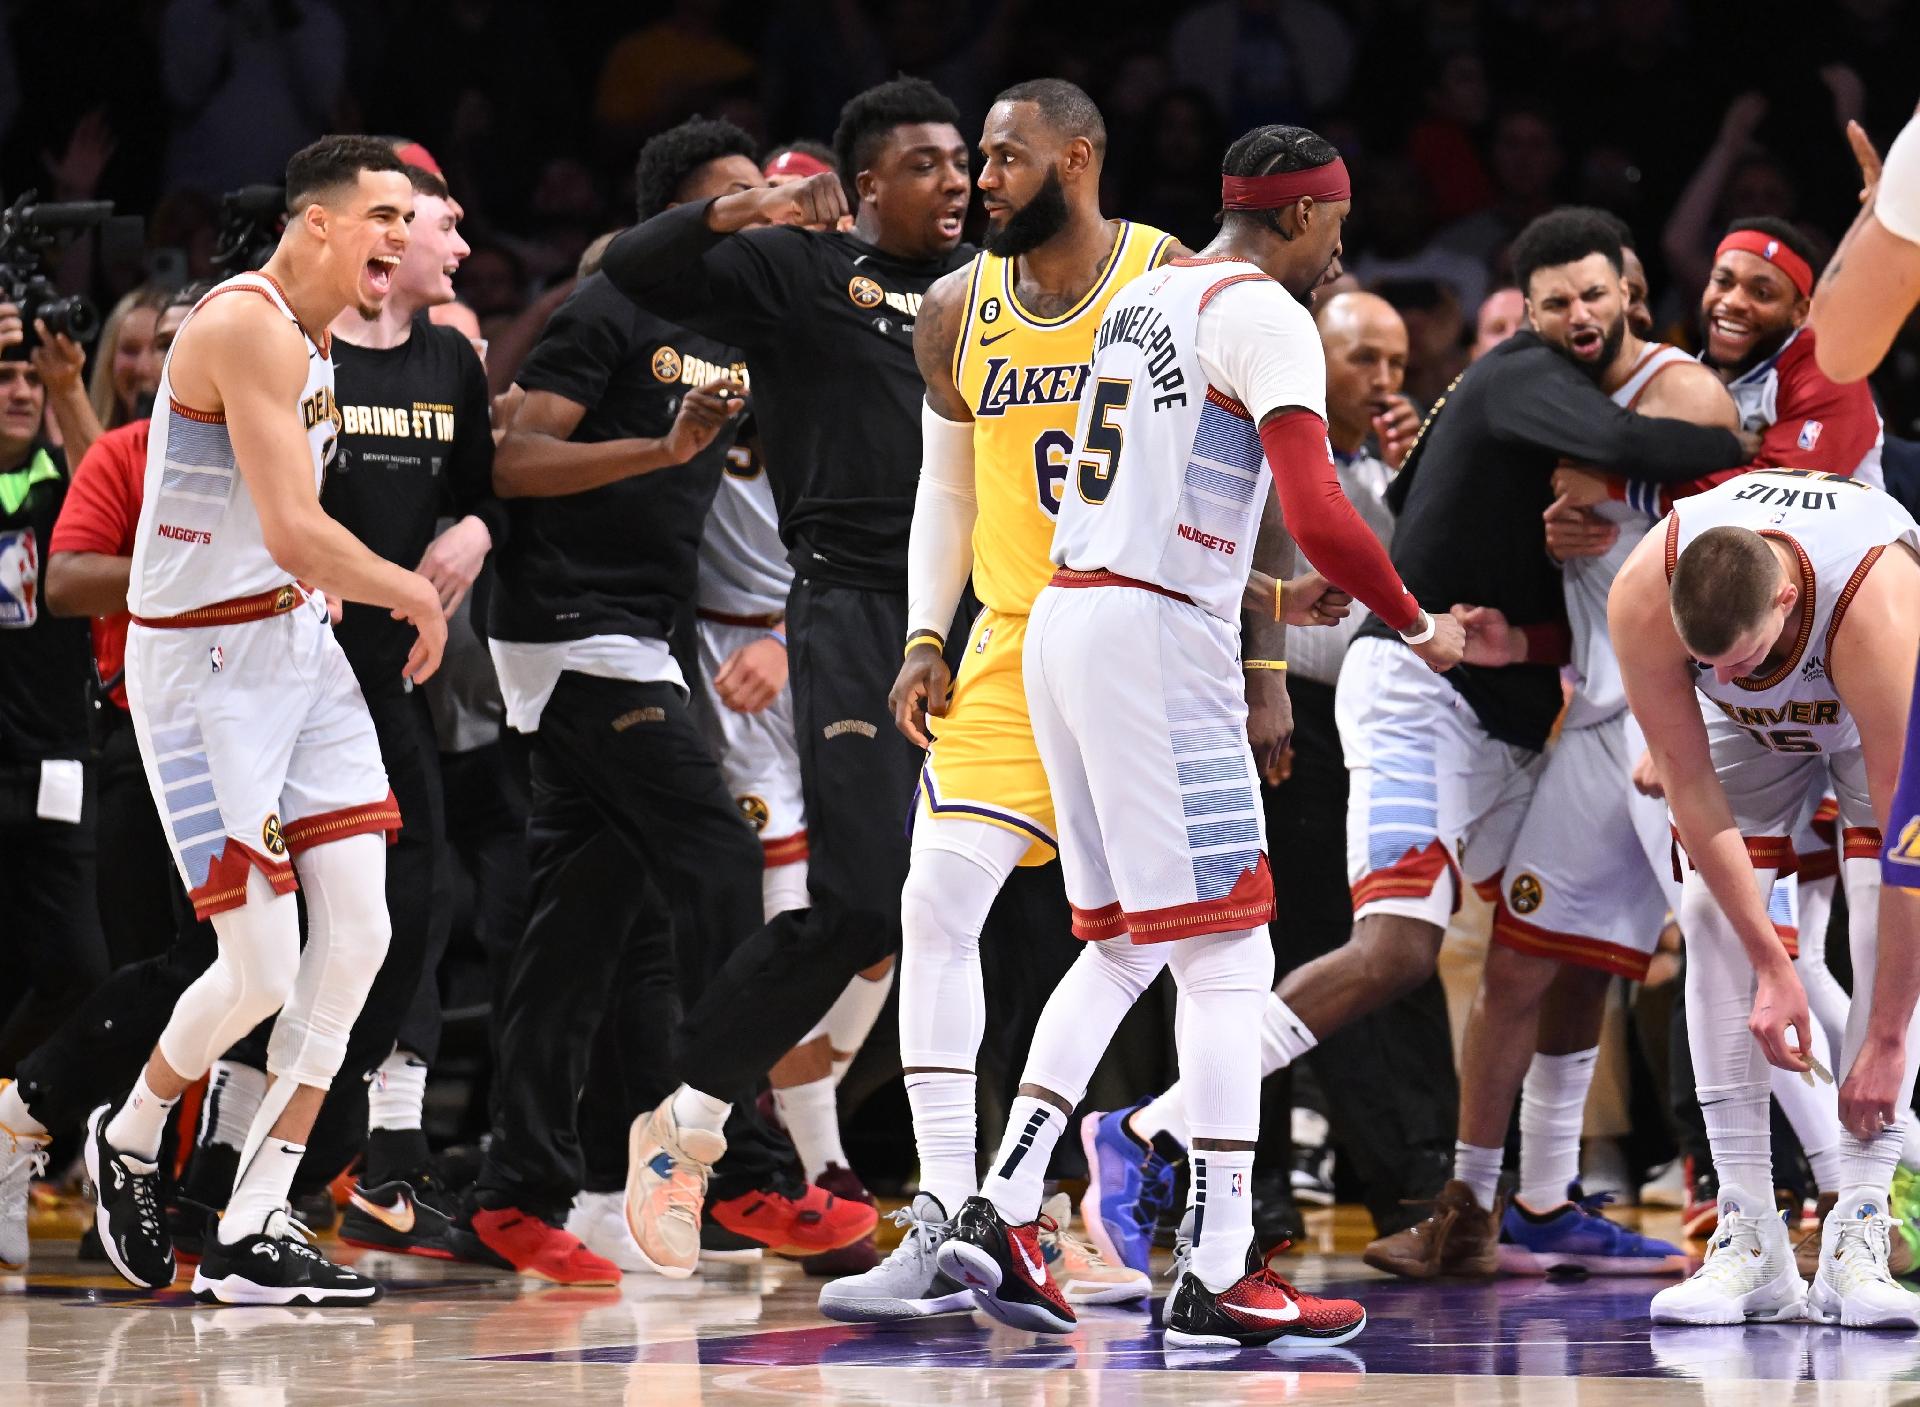 Gigantes de 2,13 metros trocam agressões em jogo da NBA. Veja o vídeo